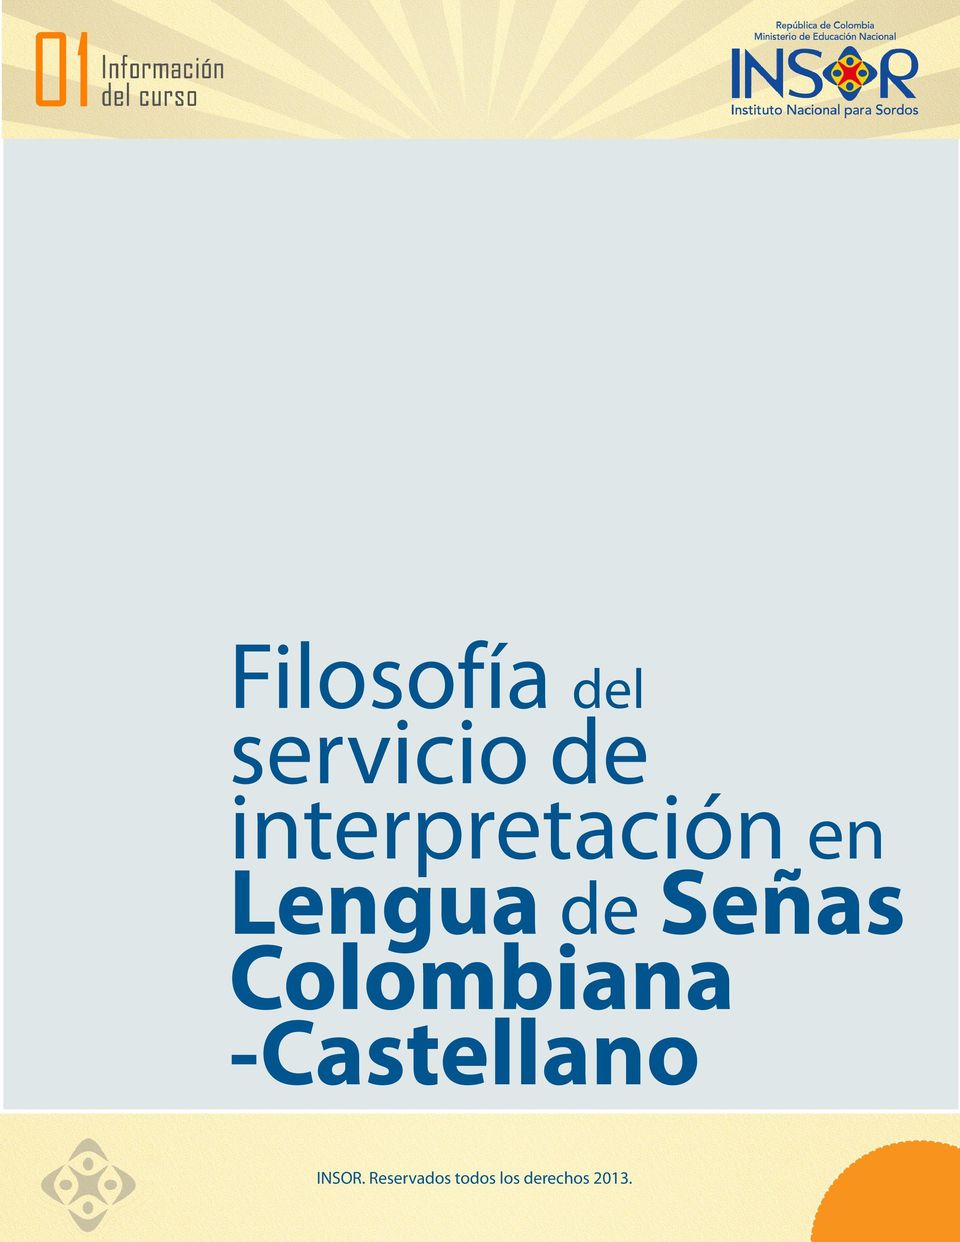 Señas Colombiana -Castellano